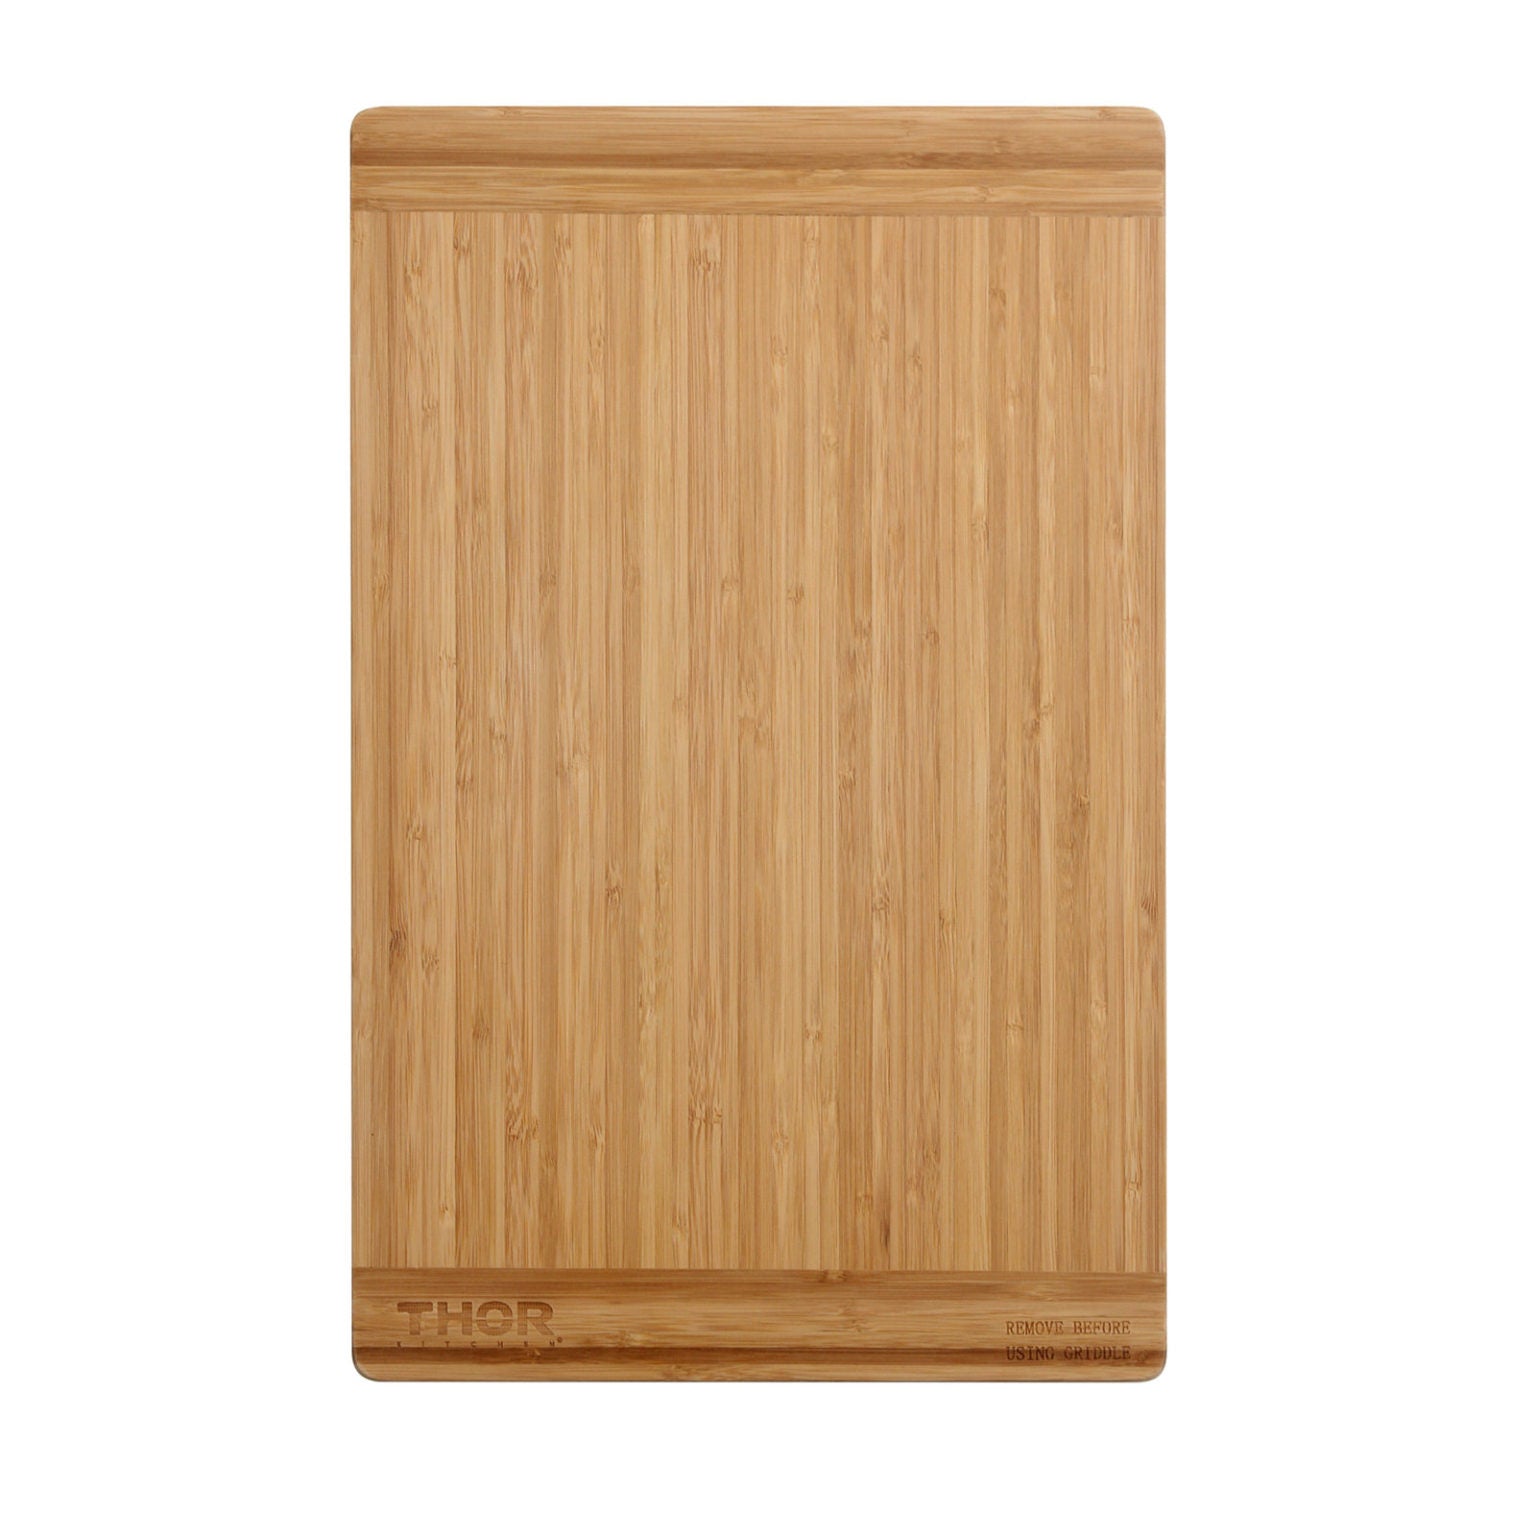 Thor Kitchen Bamboo Cutting Board, CB0001